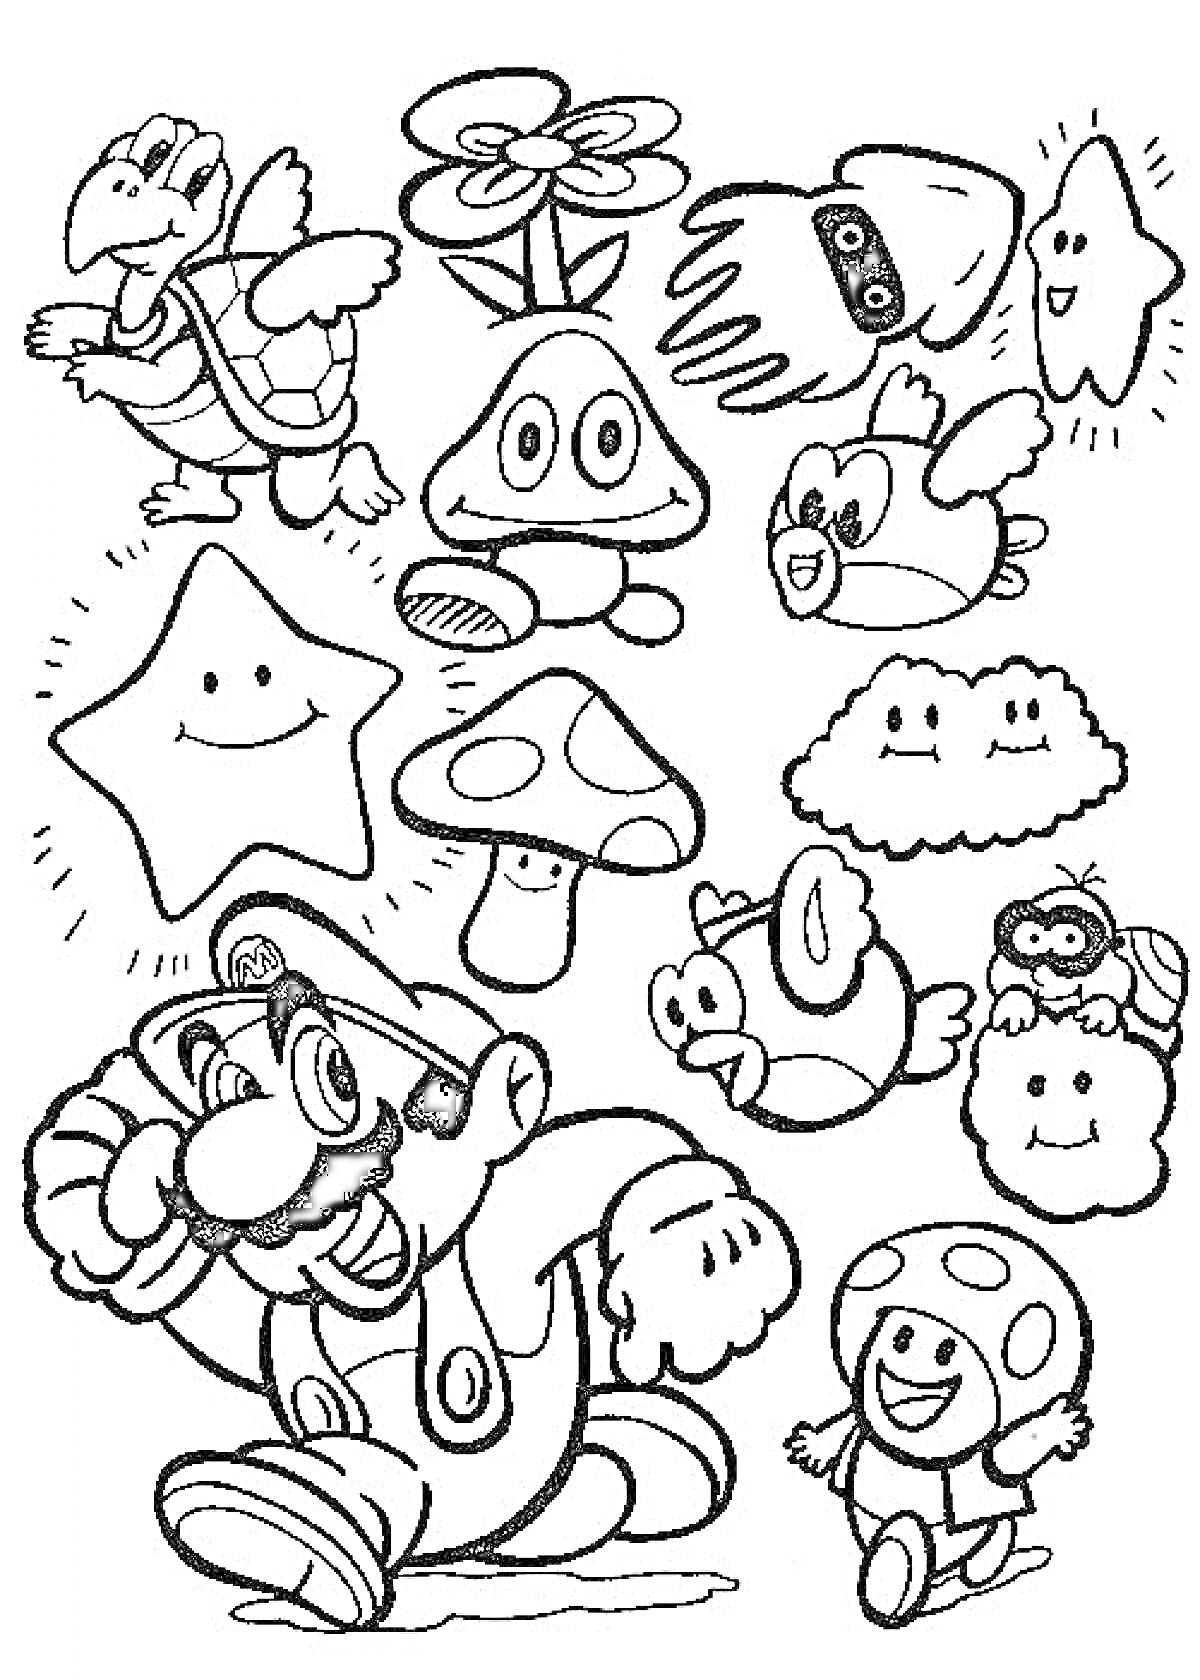 Марио, Луиджи, звезда, летающий черепаха, грибы, цветок огня, облако, рыбка и другие персонажи из Марио